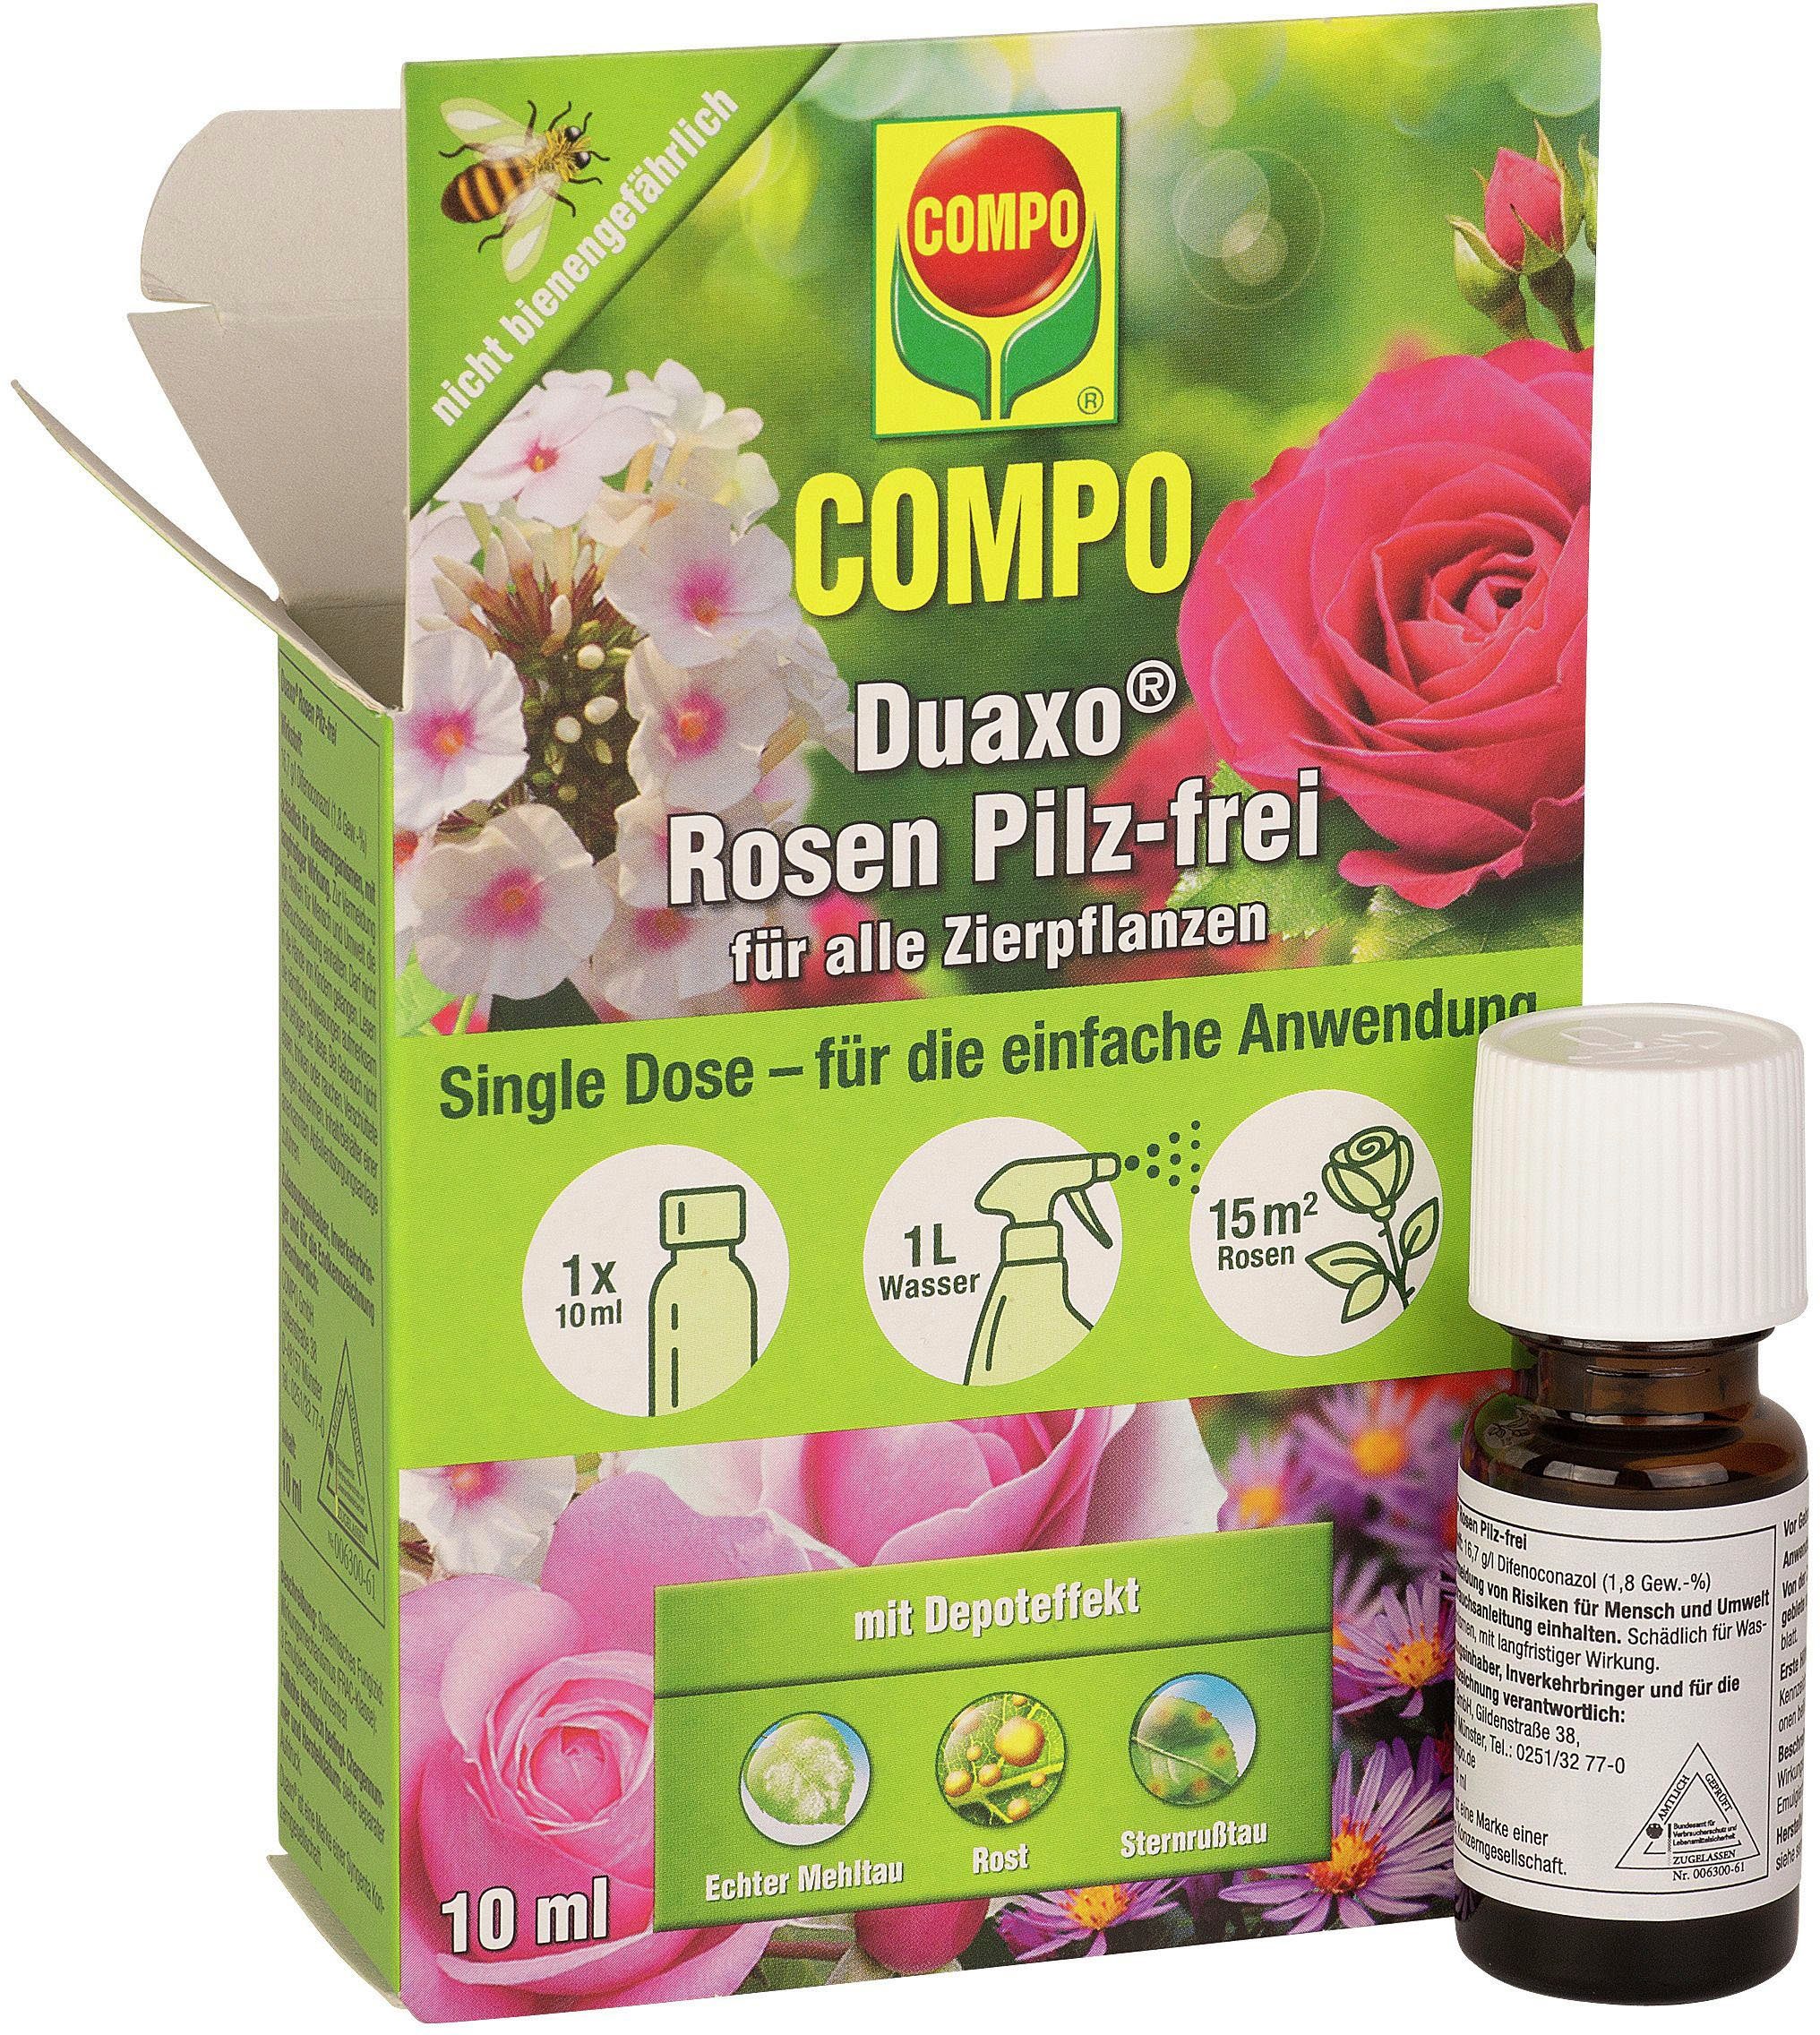 Compo Pflanzen-Pilzfrei »Duaxo Rosen Pilz-frei für alle Zierpflanzen«, 10  ml online kaufen | OTTO